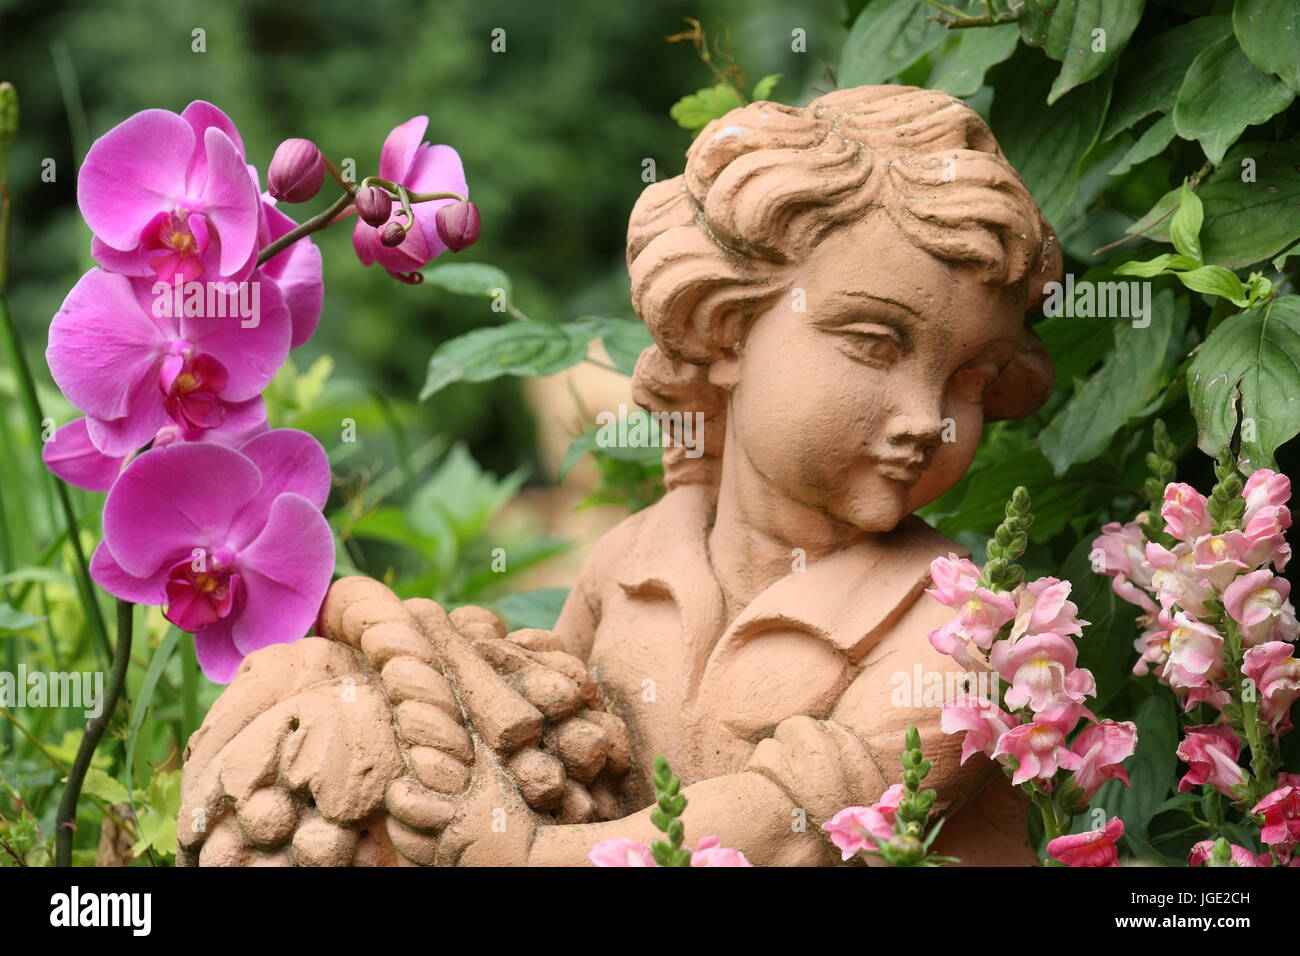 Garten-Figur mit kleinen Löwen Mund und Orchidee, Gartenfigur Mit Loewenmaeulchen Und Orchidee Stockfoto